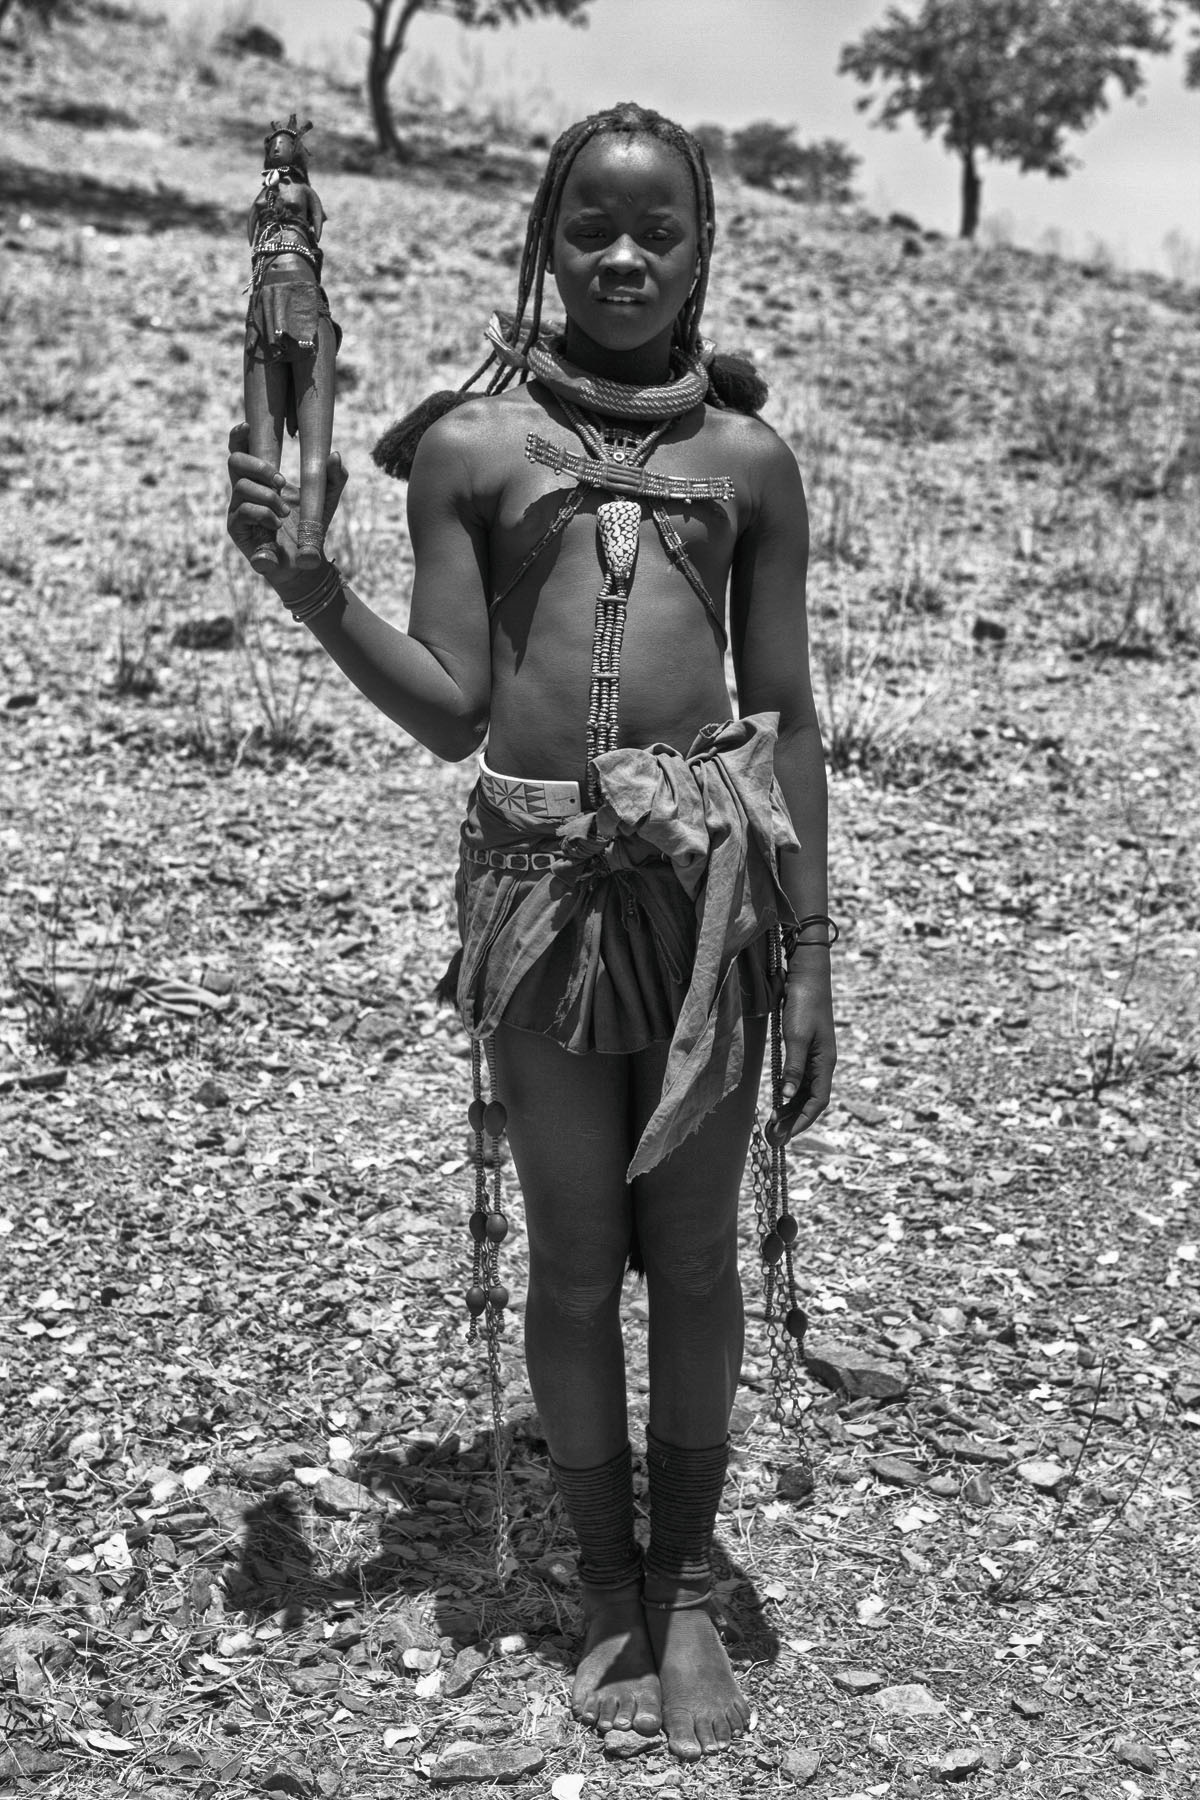 Himba land